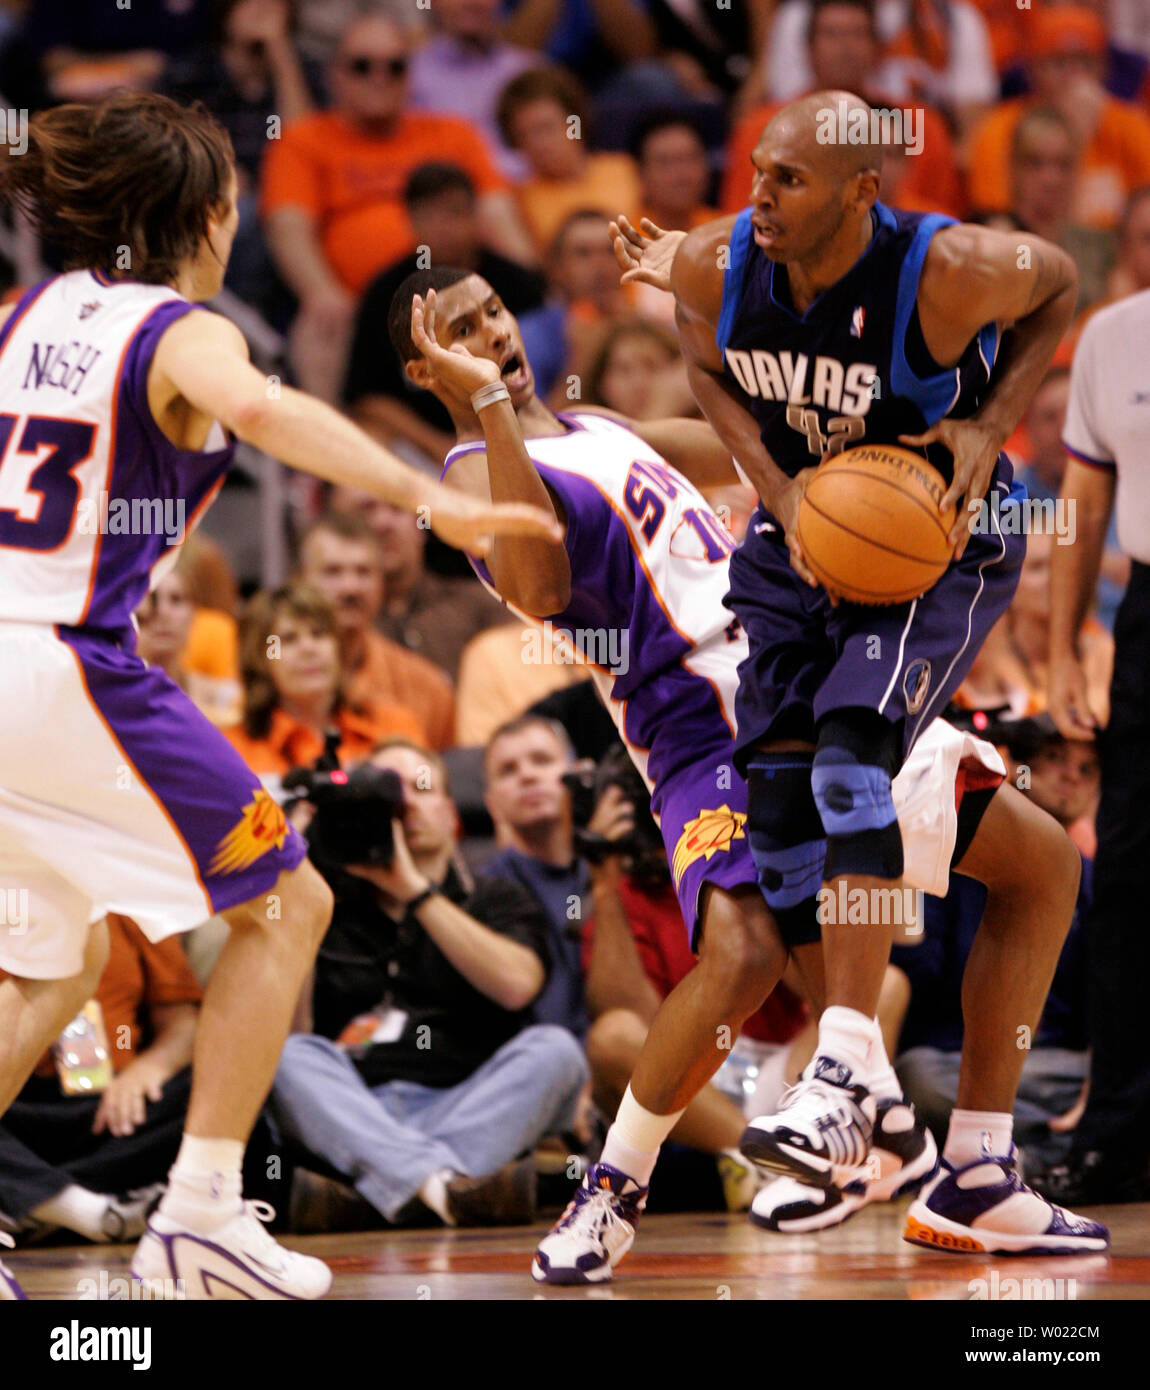  NBA/PLAYOFFS2006 - NBA Finals: Heat vs. Mavericks